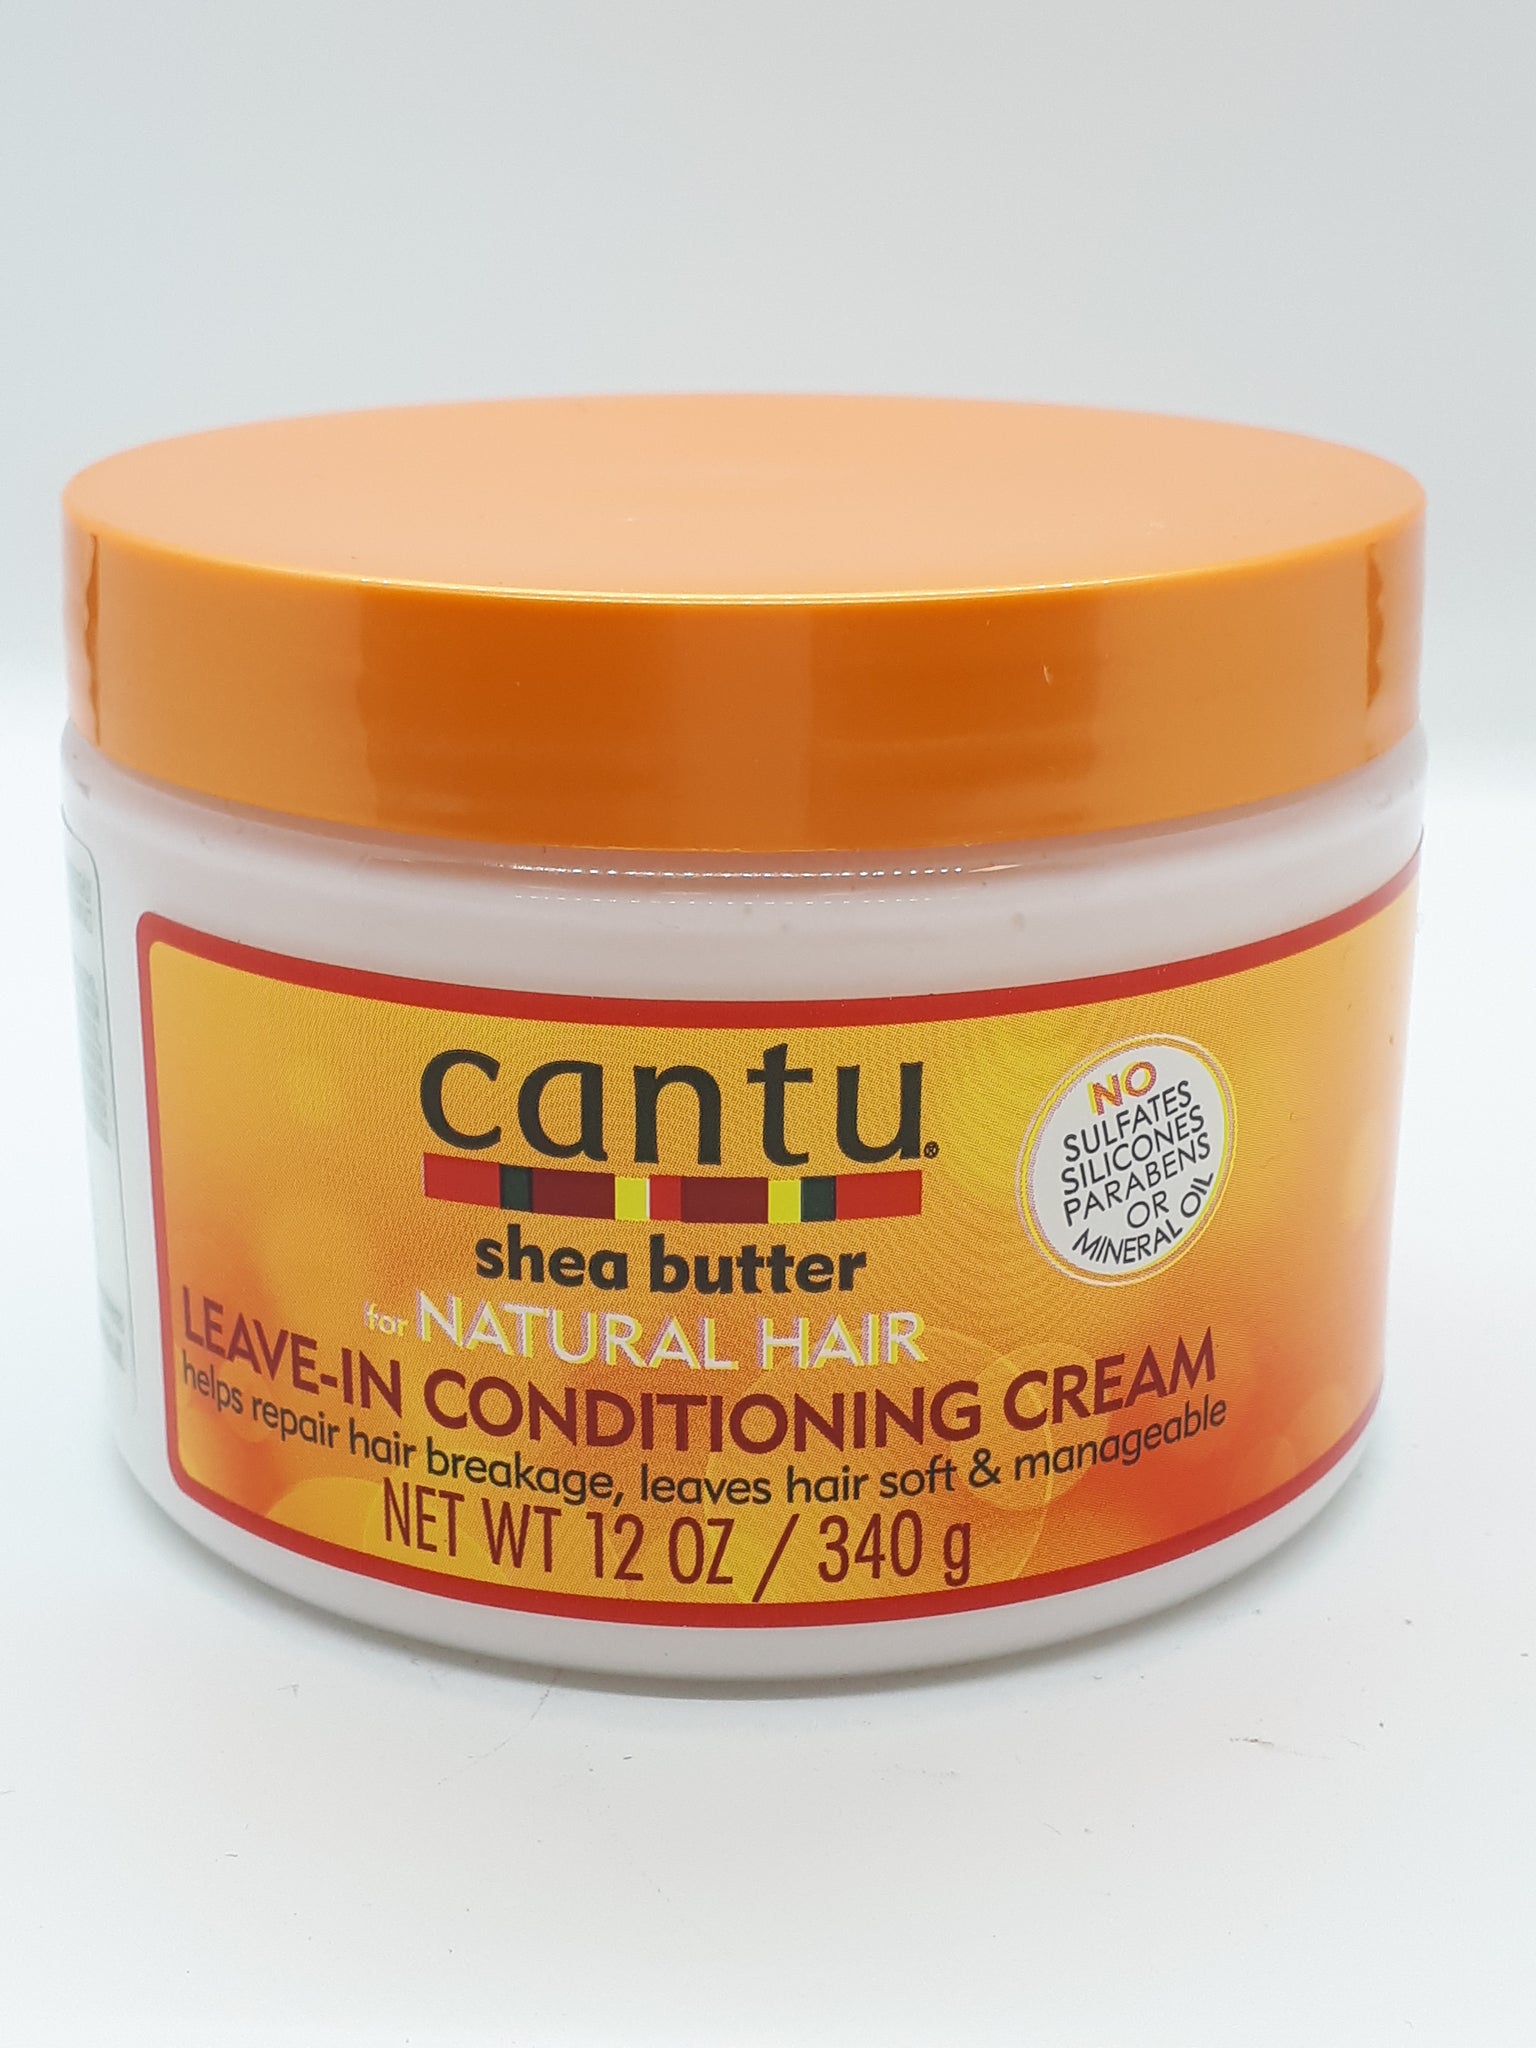 CANTU - Leave-In Conditioning Cream